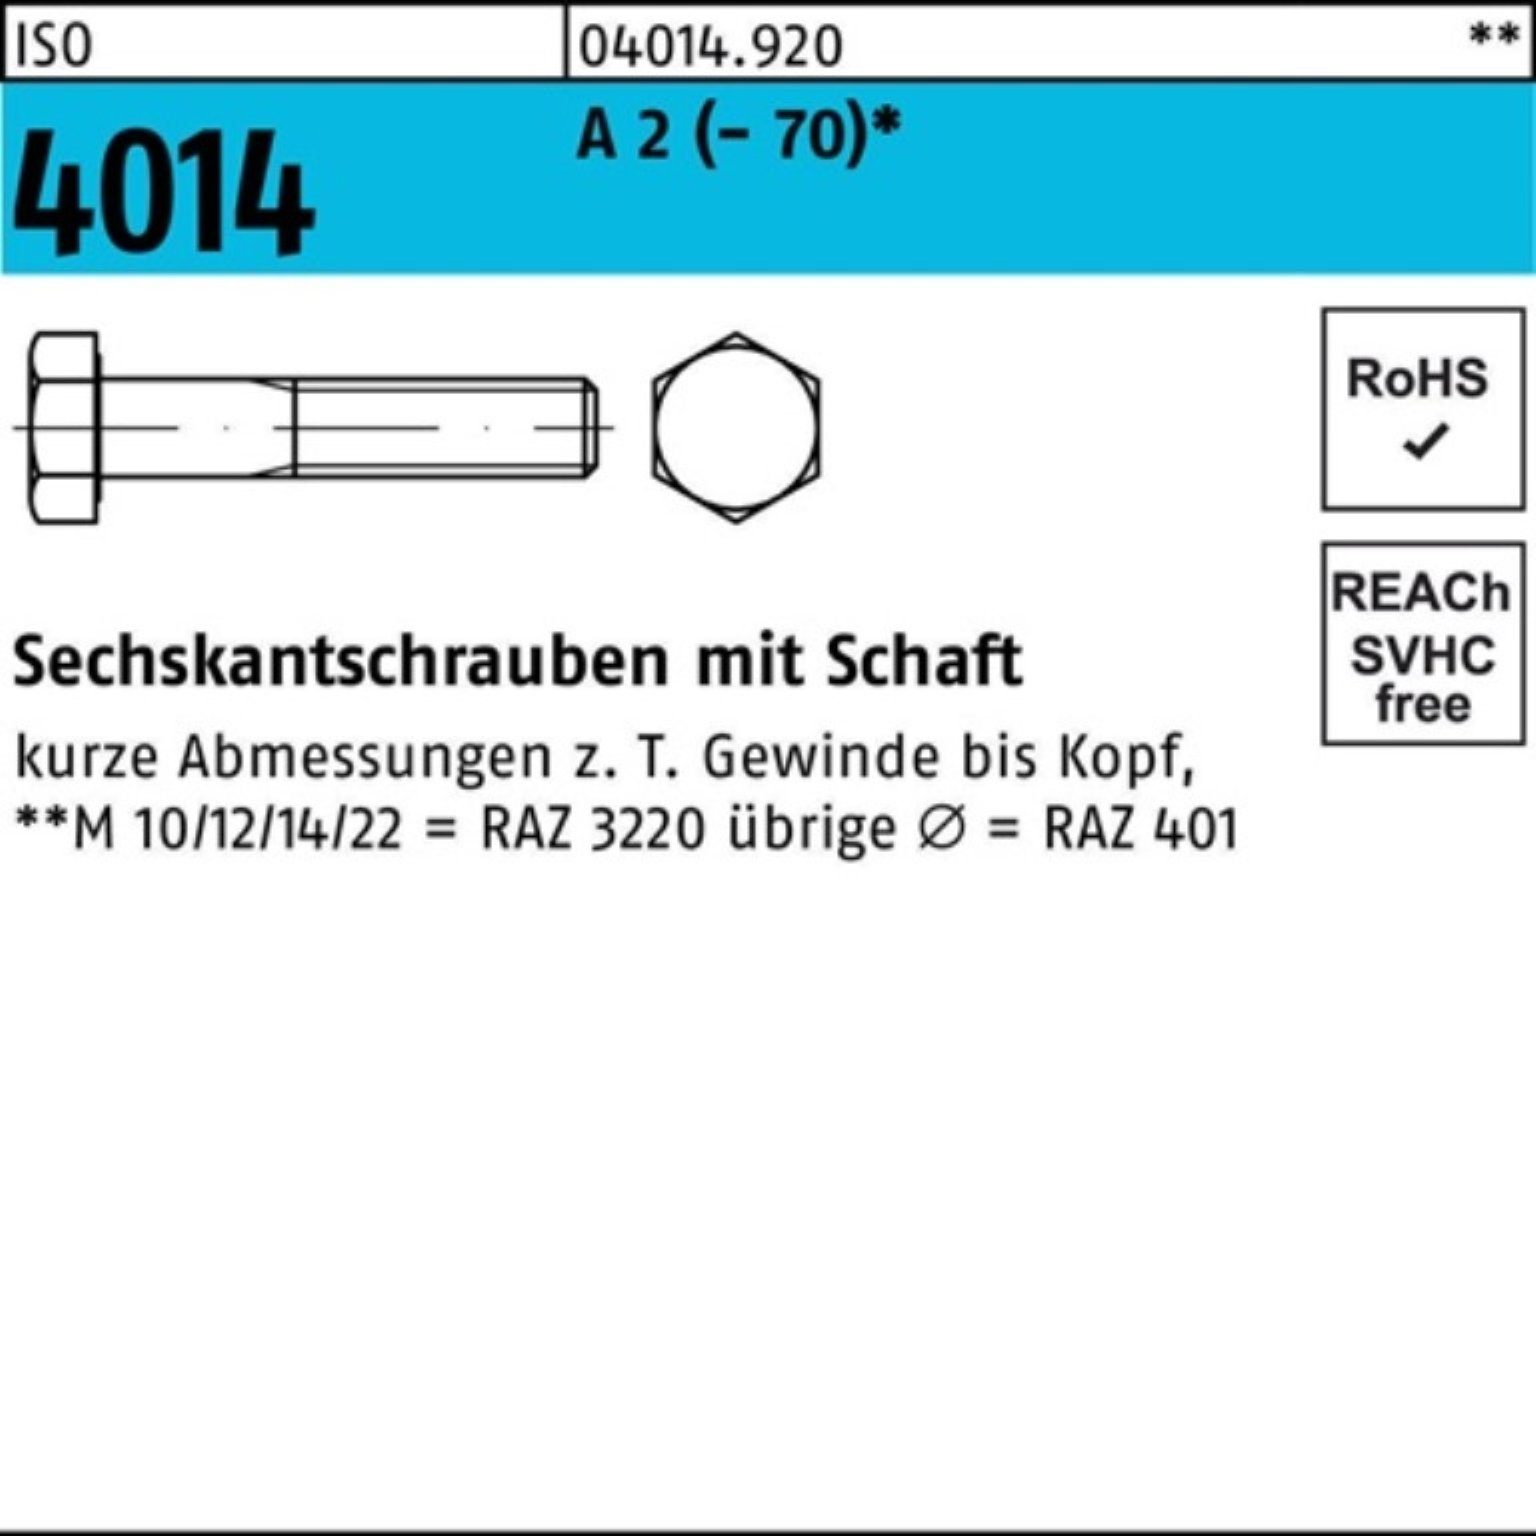 Bufab Sechskantschraube 100er Pack Sechskantschraube ISO 4014 Schaft M5x 60 A 2 (70) 100 St